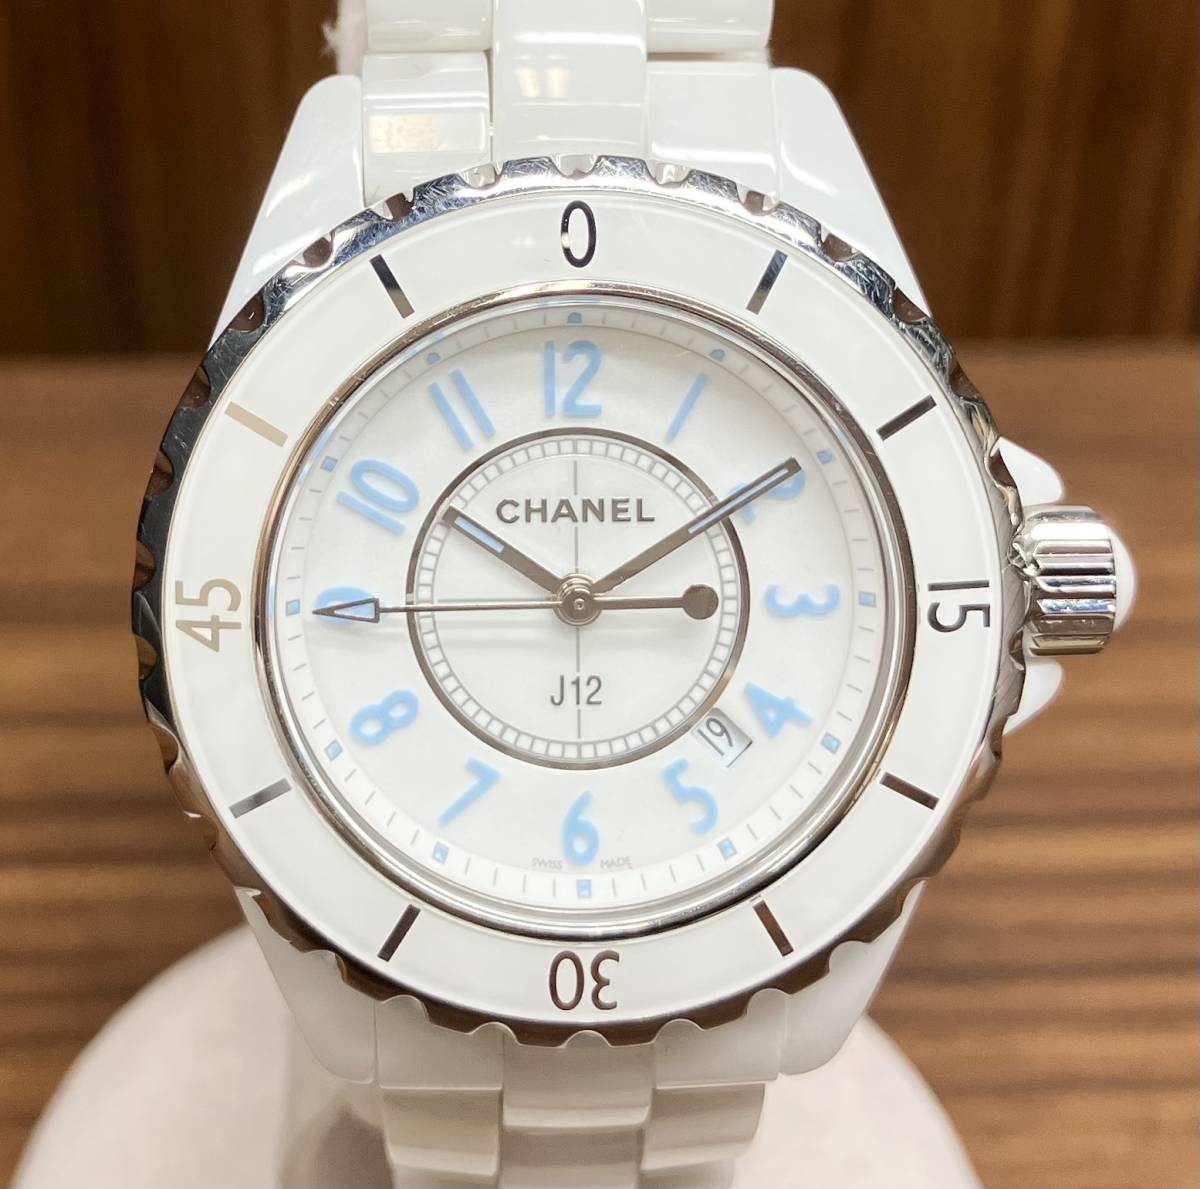 CHANEL シャネル J12 H3826 限定2000本 ブルーライト クォーツ レディース 腕時計 セラミック ホワイト